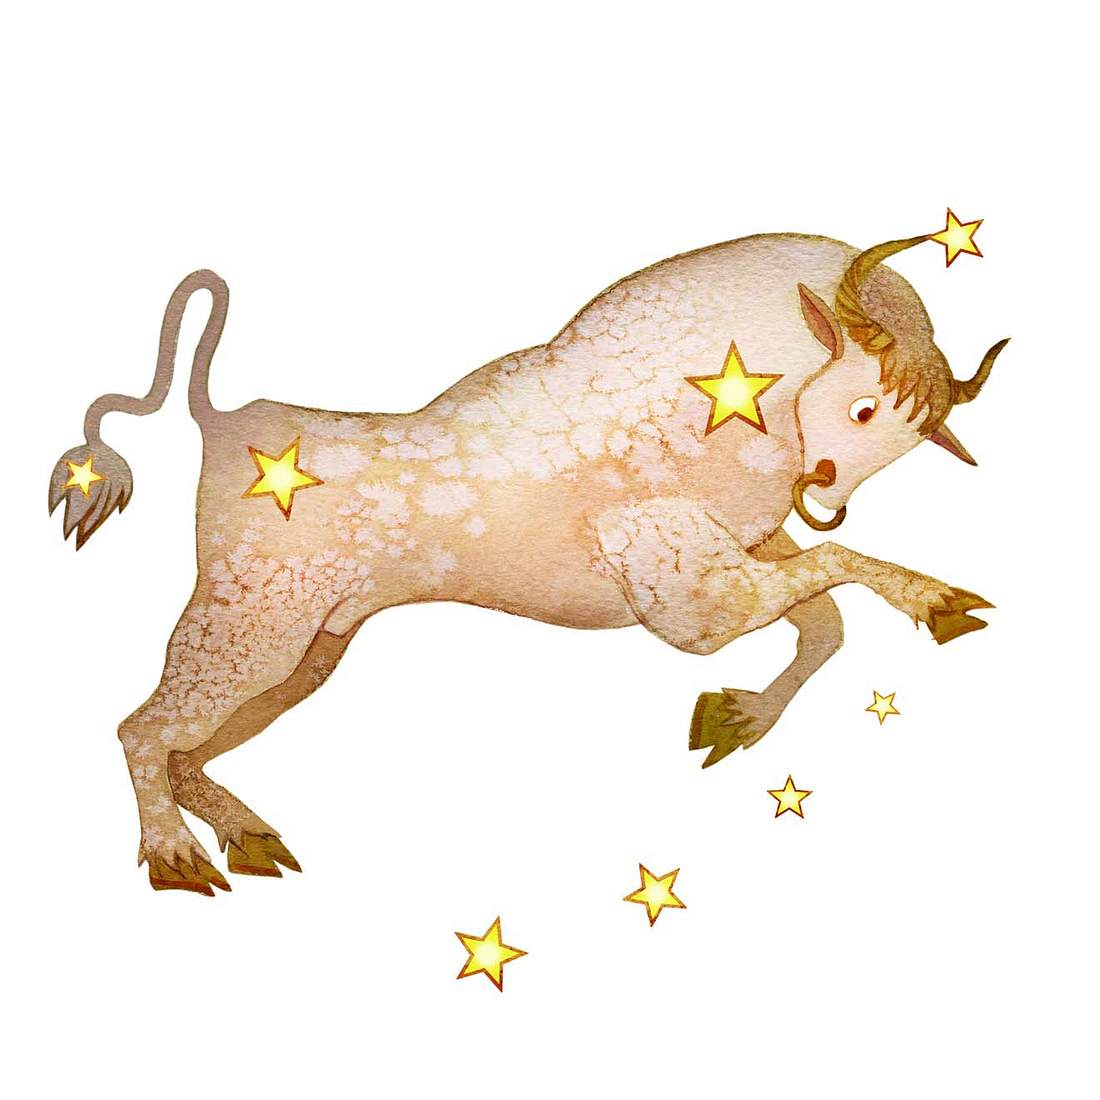 Horoskop: Von diesen Sternzeichen fühlst du dich angezogen Stier